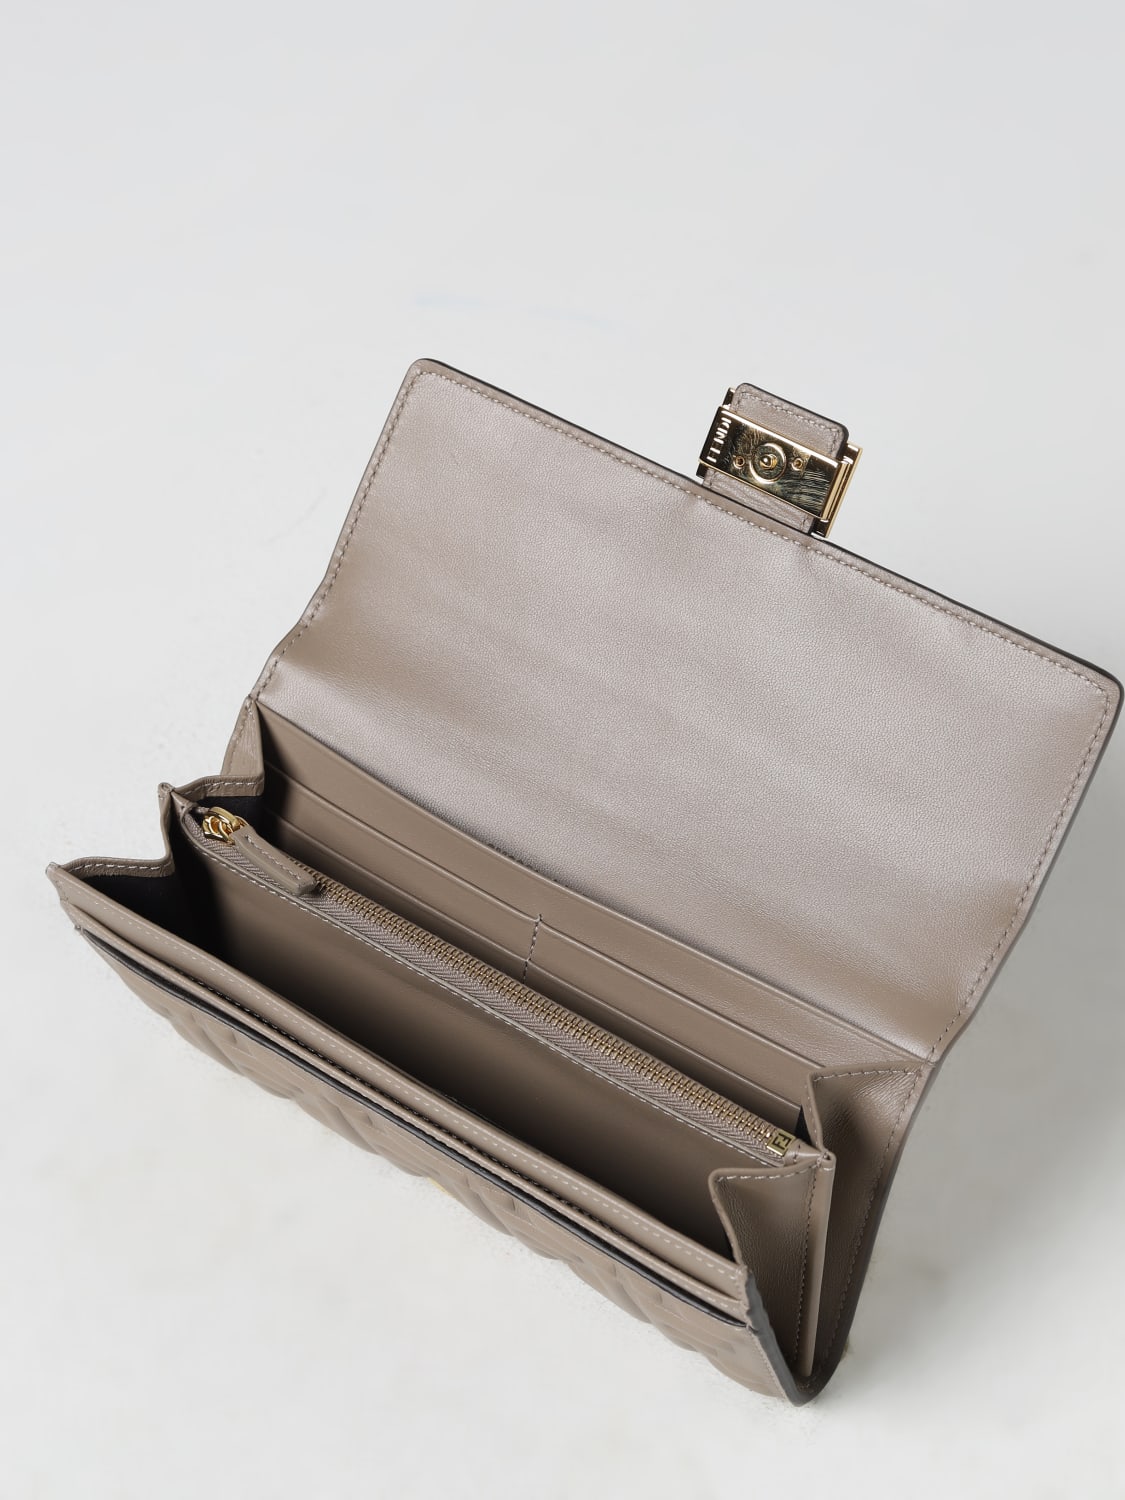 Fendi Baguette Continental Leather Wallet